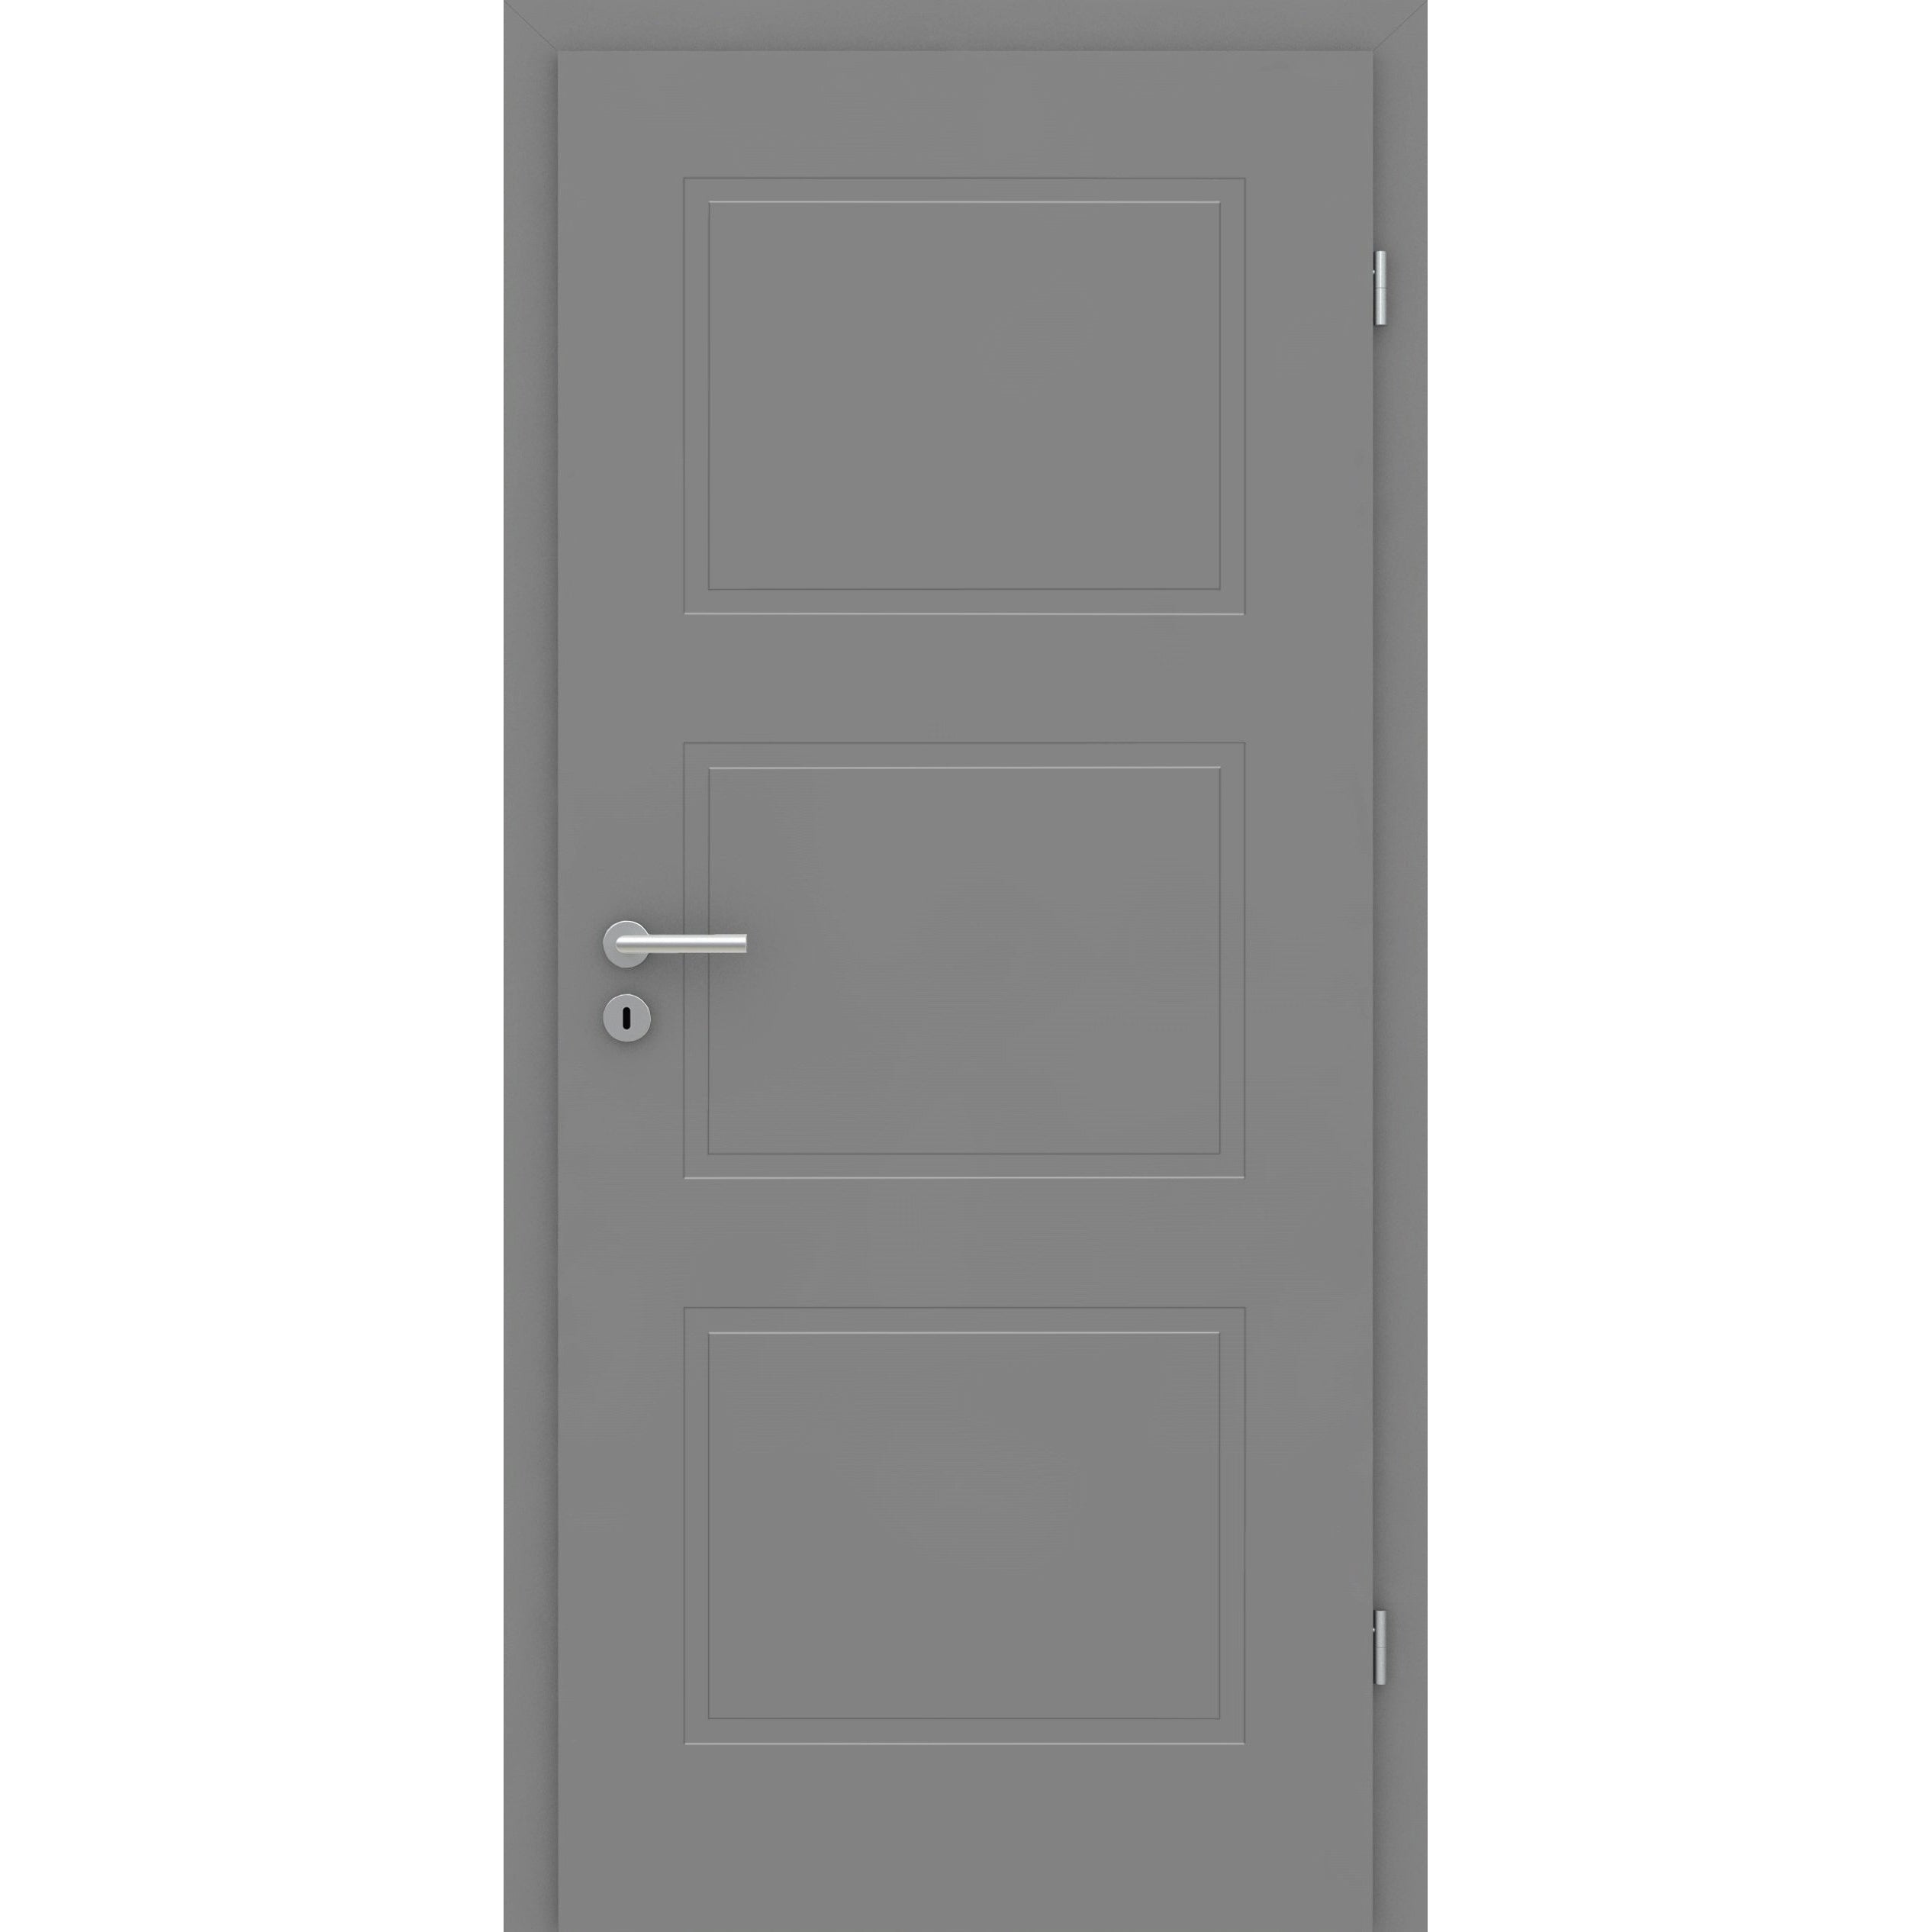 Zimmertür mit Zarge grau 3 Kassetten Designkante - Modell Stiltür M37